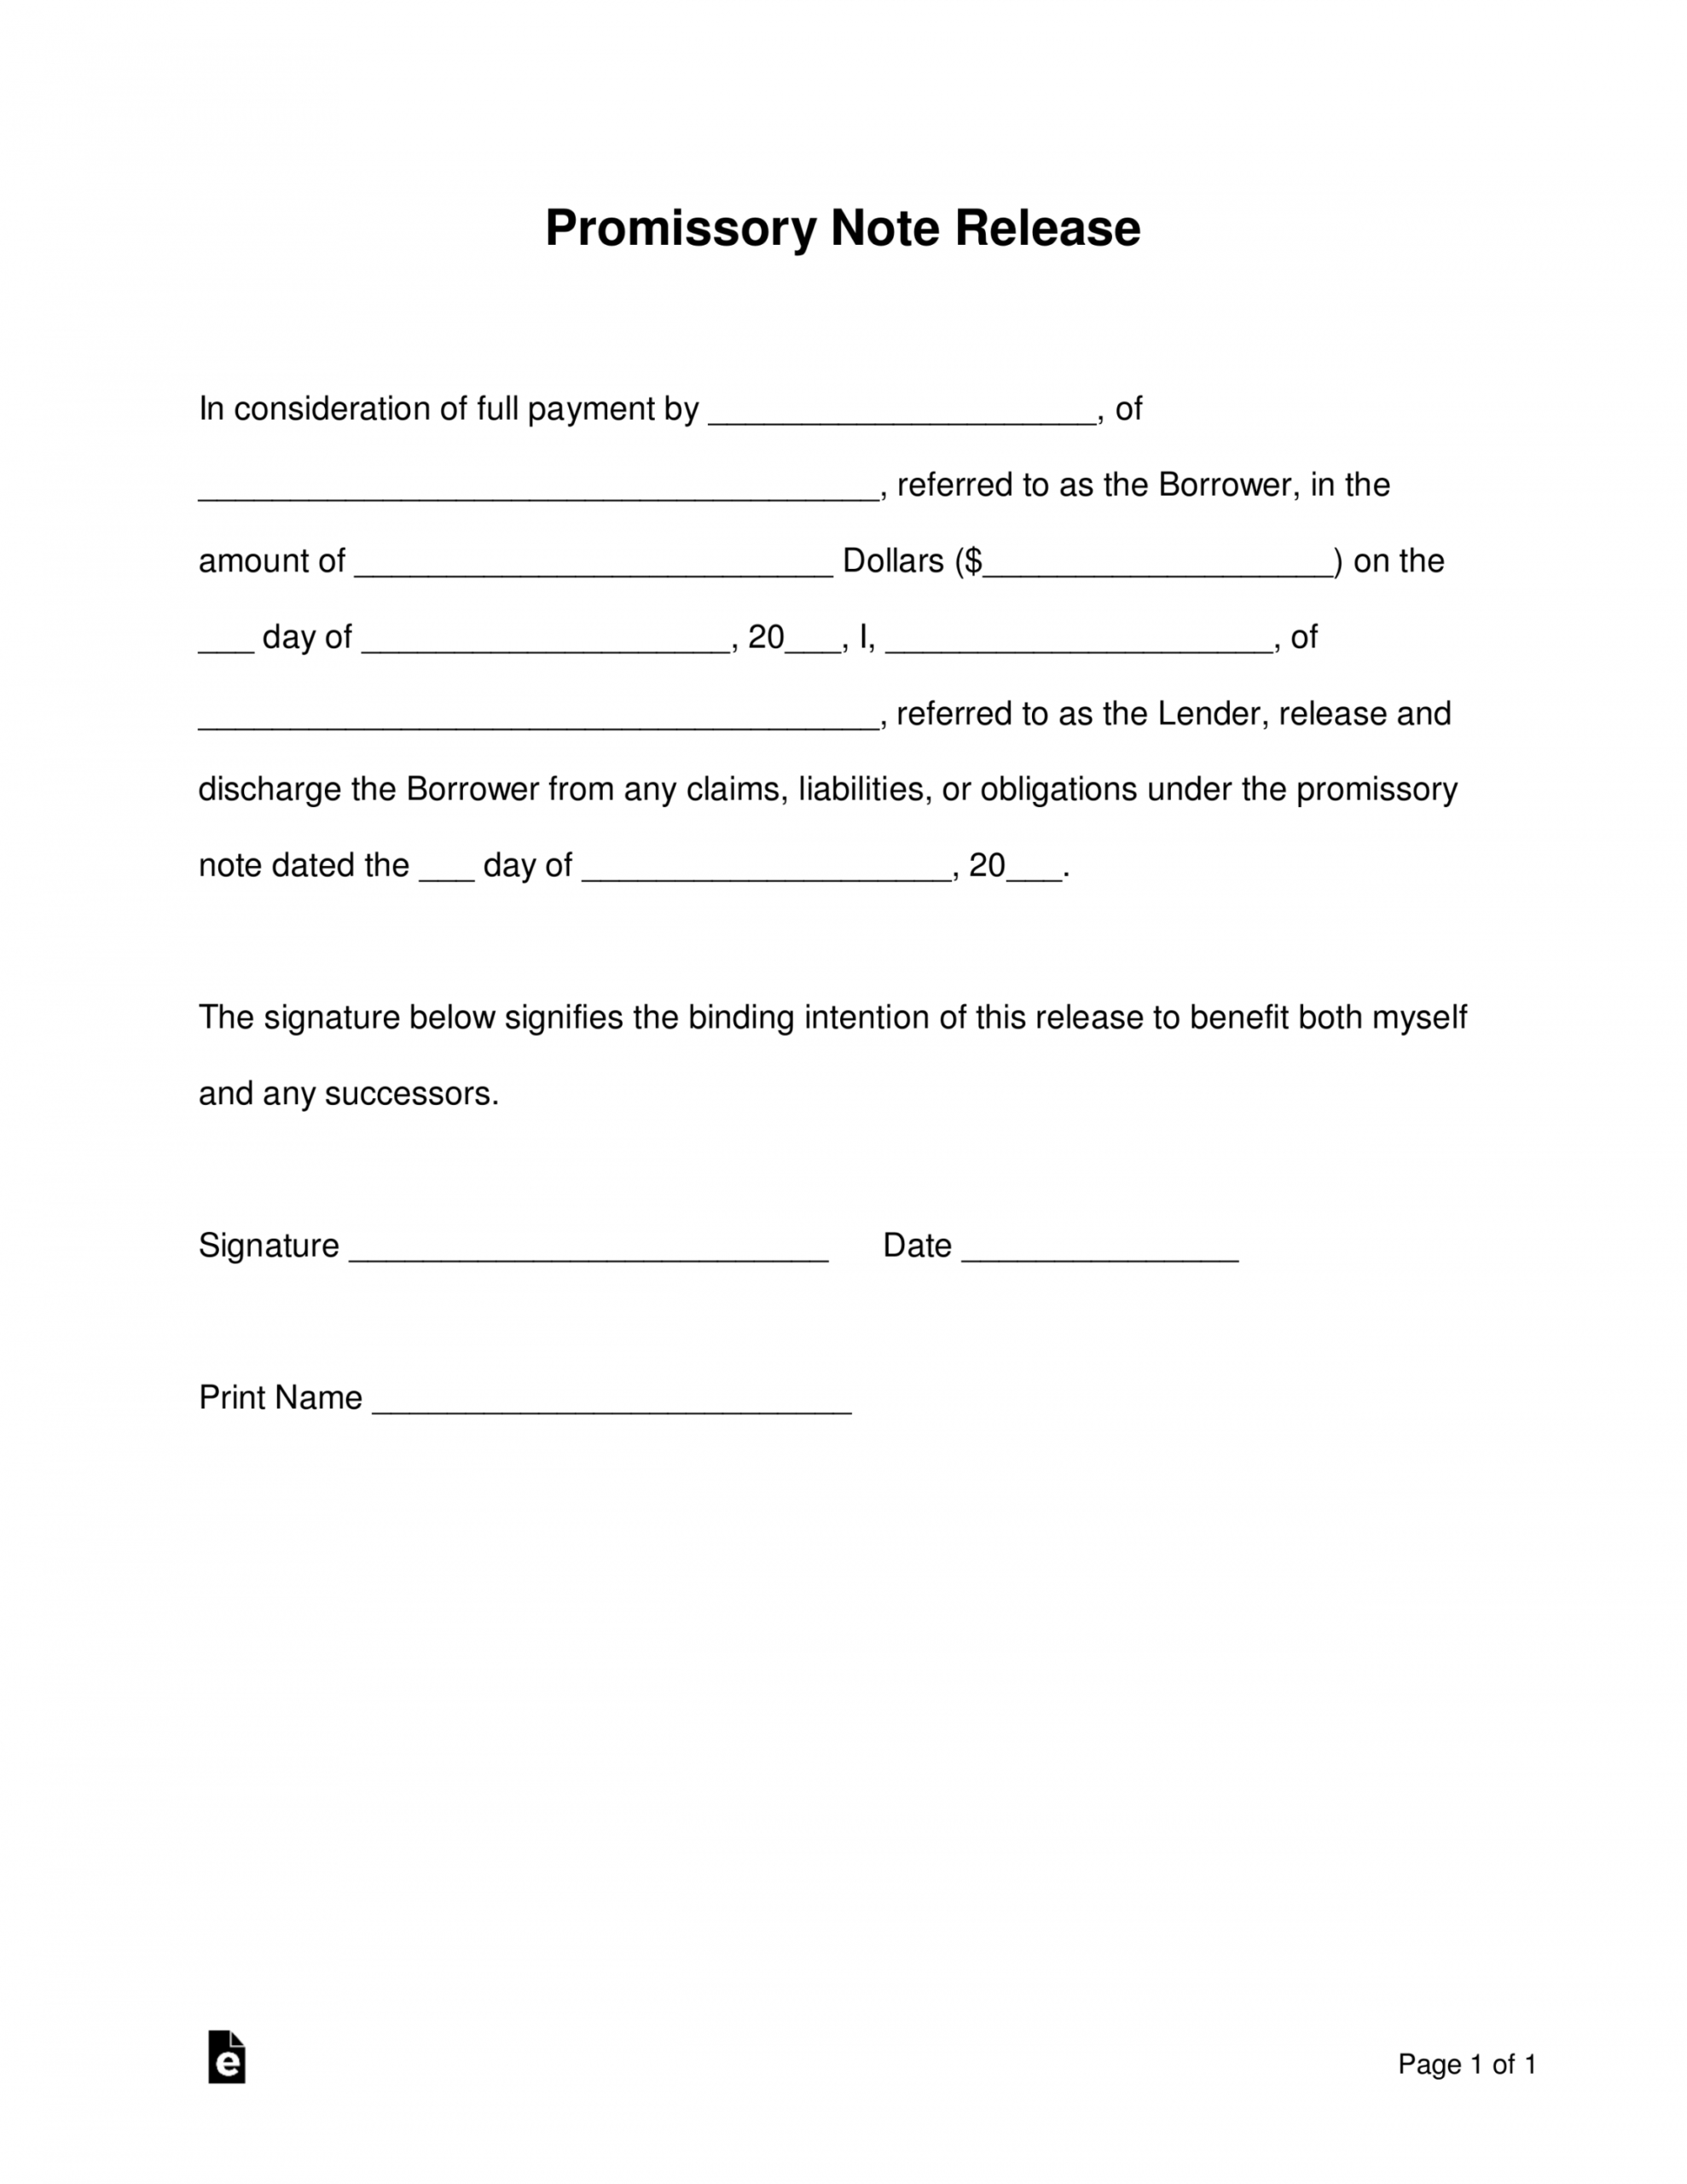 sample free promissory note loan release form  word  pdf release of promissory note template example